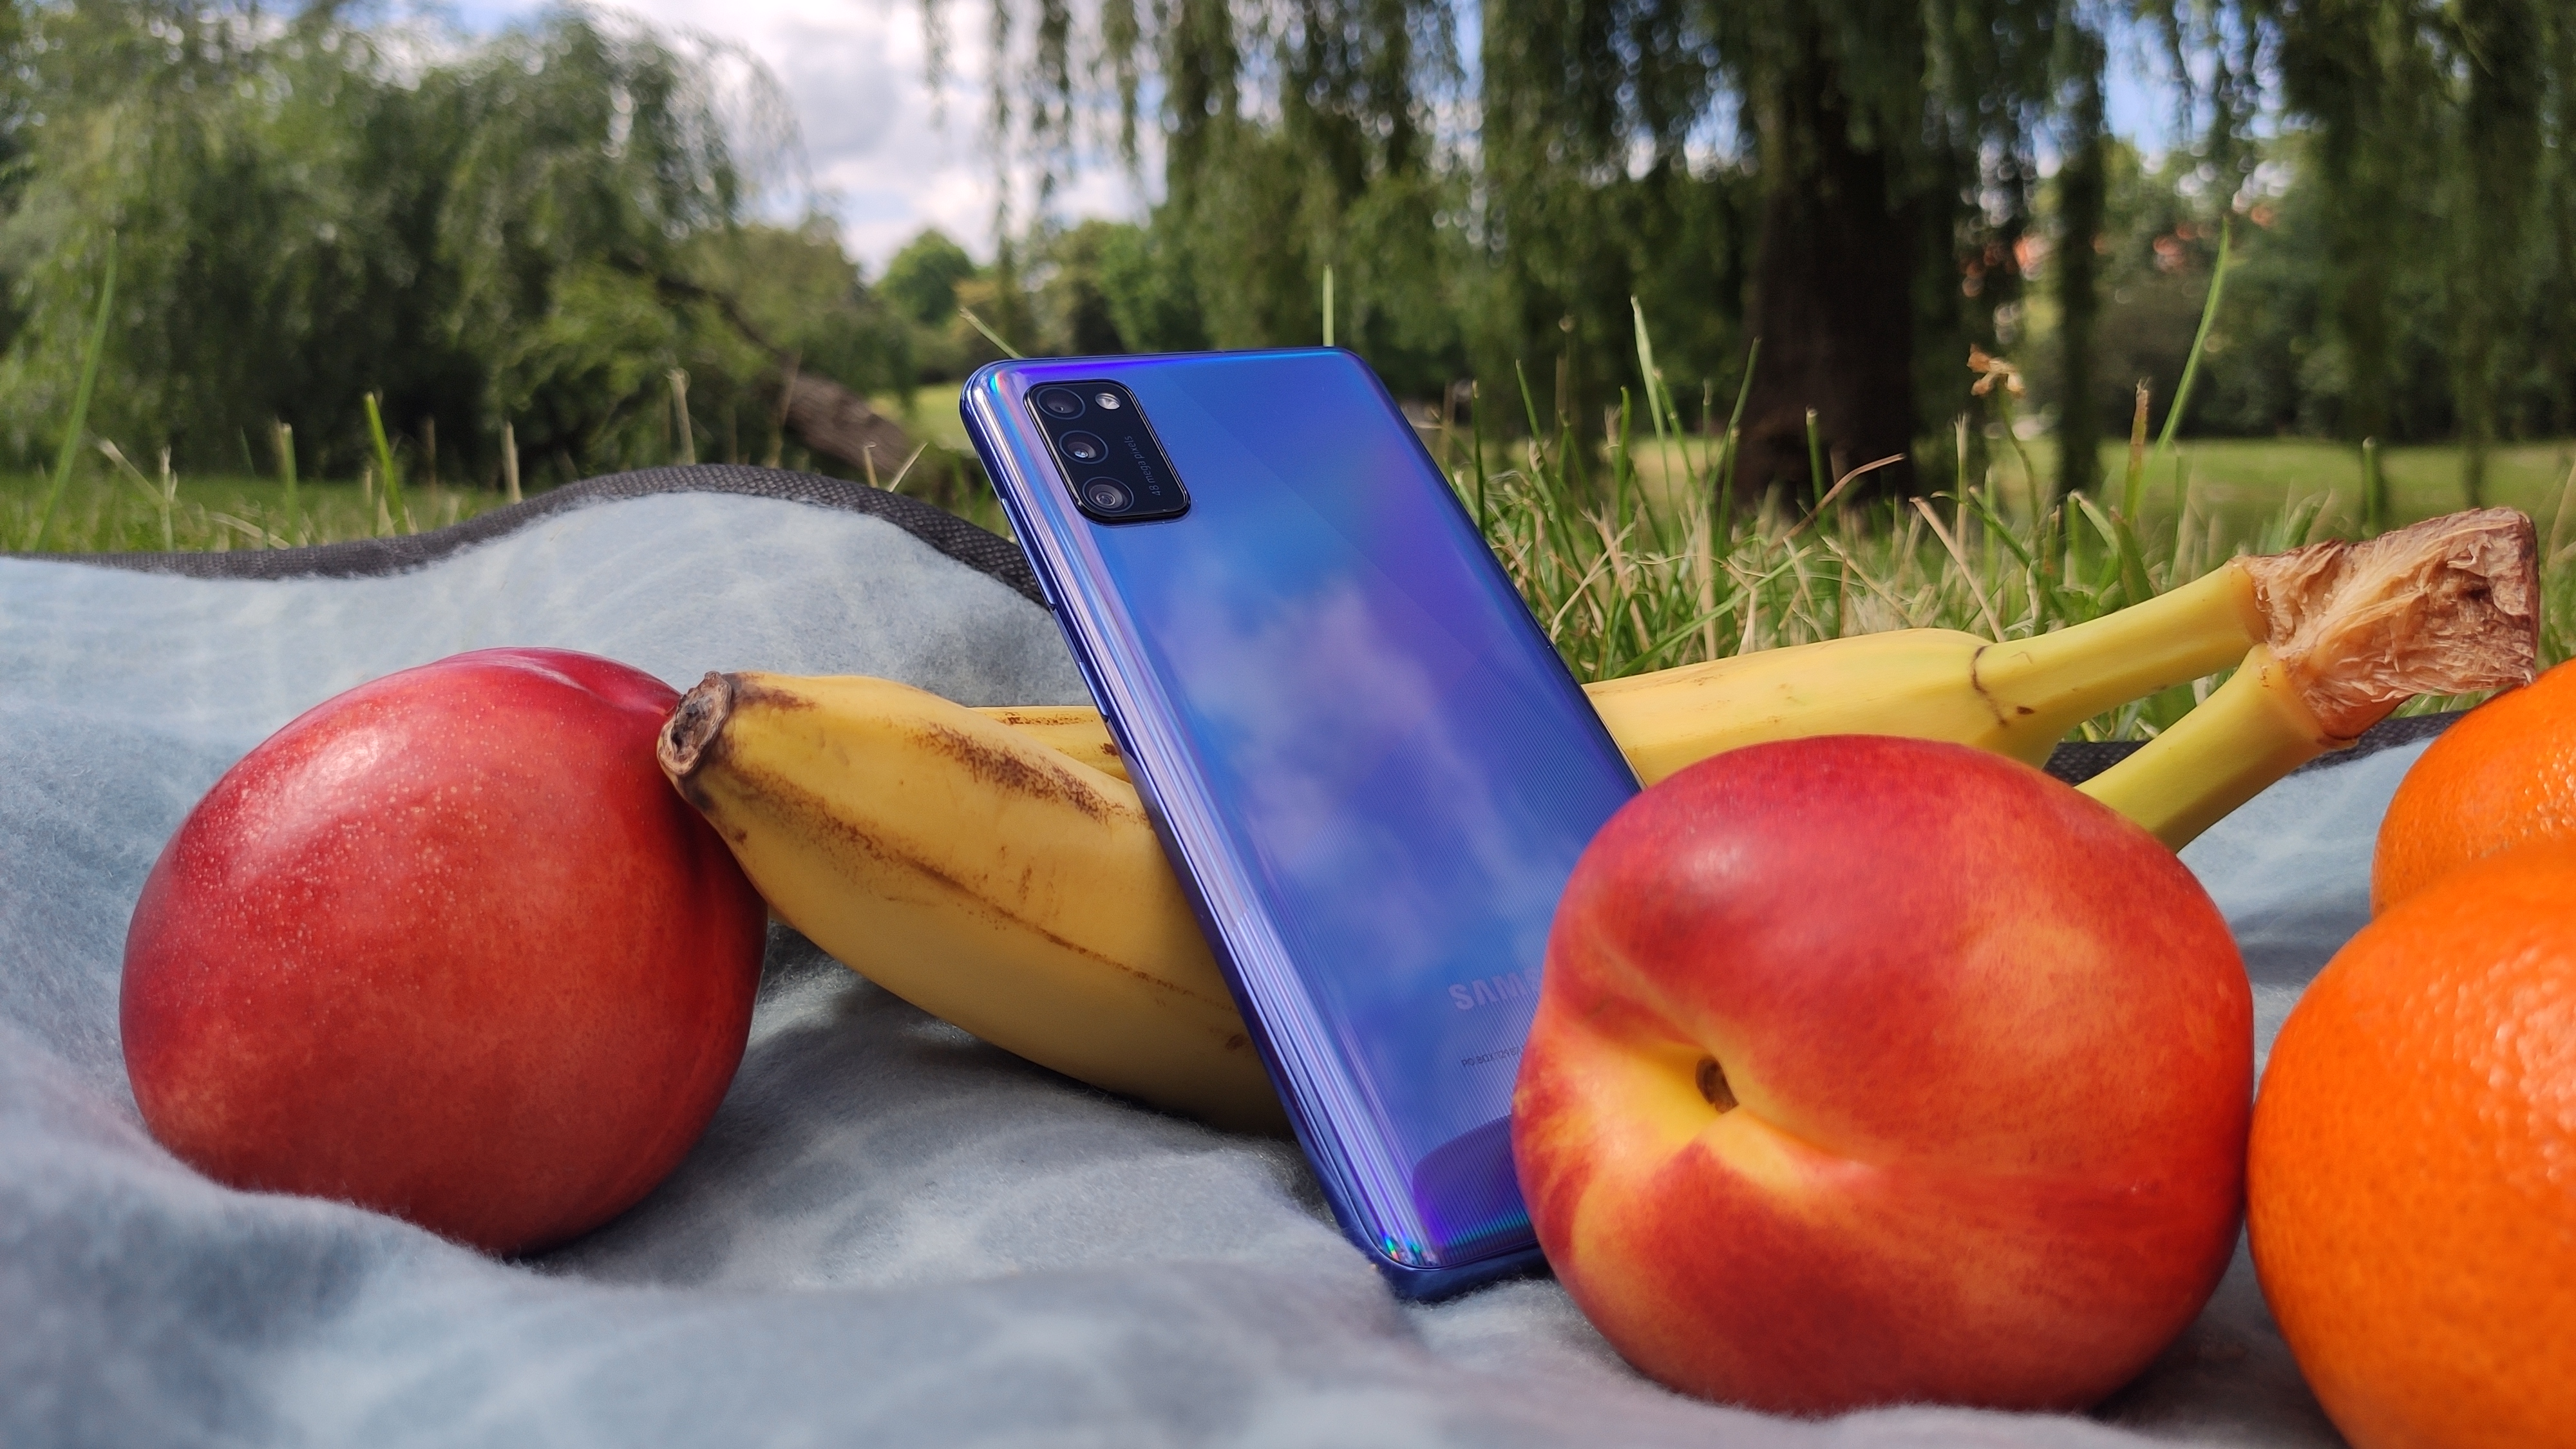 Podczas pikniku Samsung Galaxy A41 zwracał uwagę przechodniów, a może to zasługa owoców? | fot. Krzysztof Rodziński